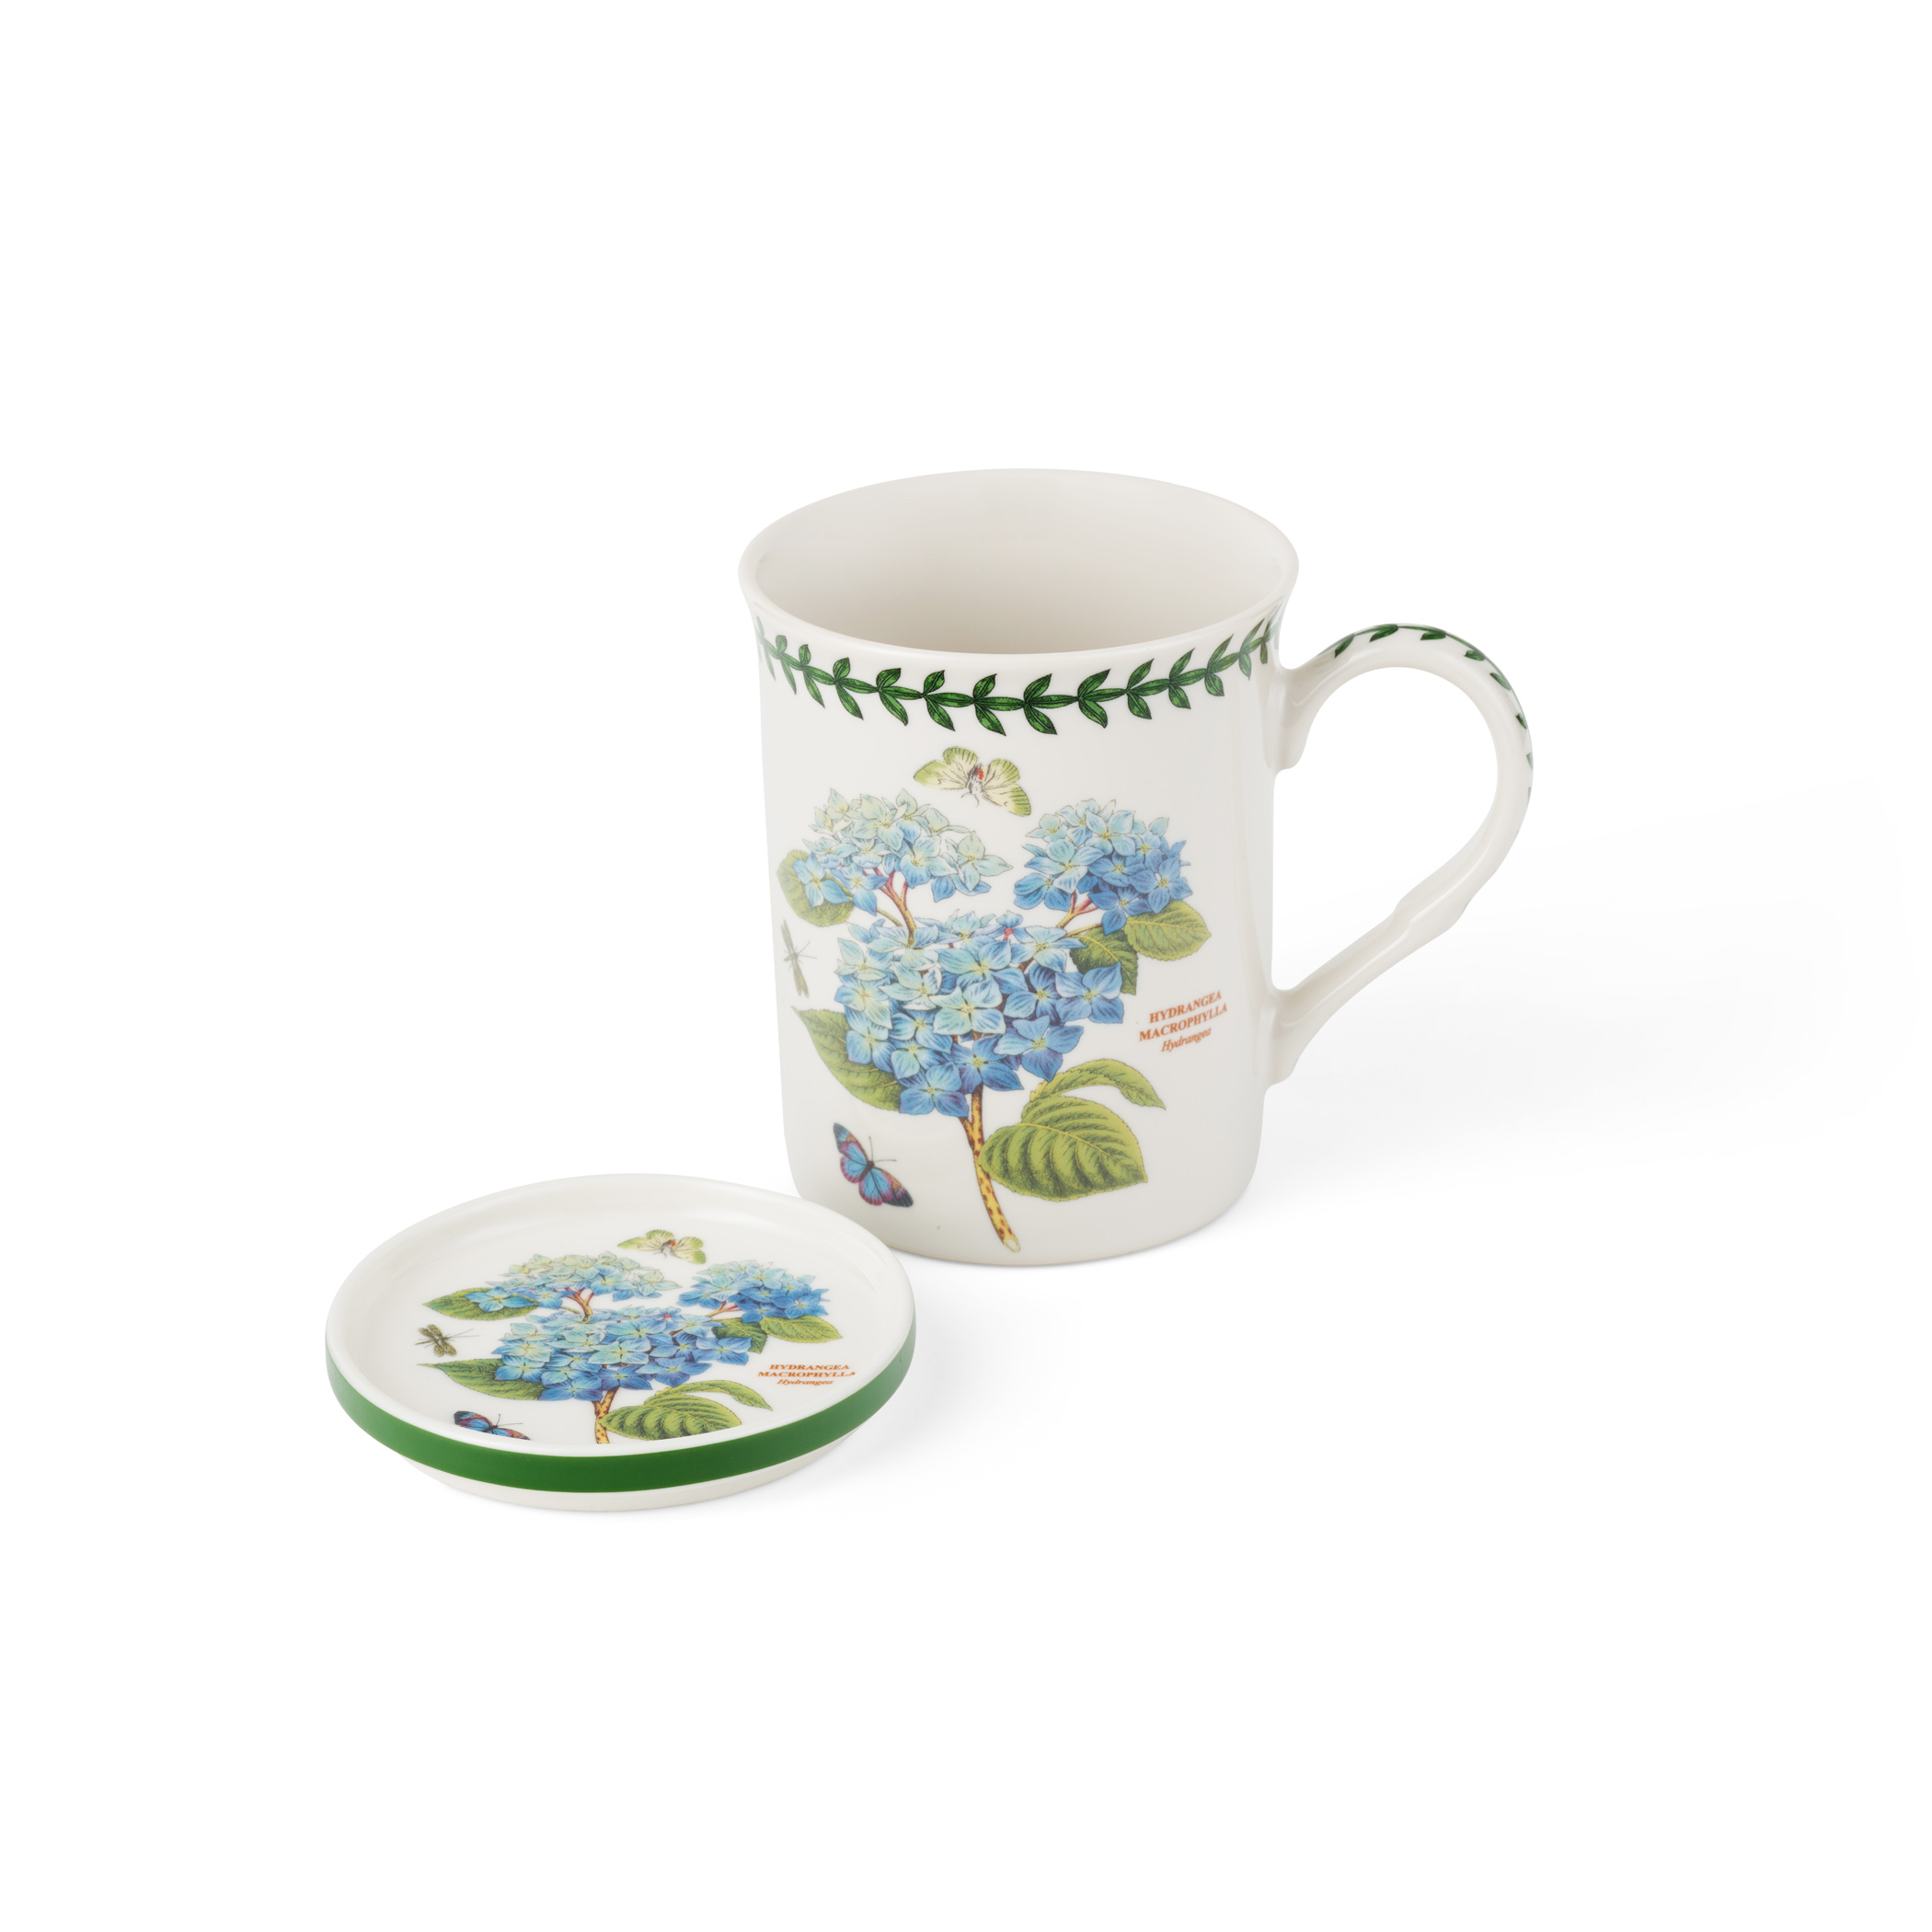 Botanic Garden Mug and Coaster Set (Hydrangea) image number null